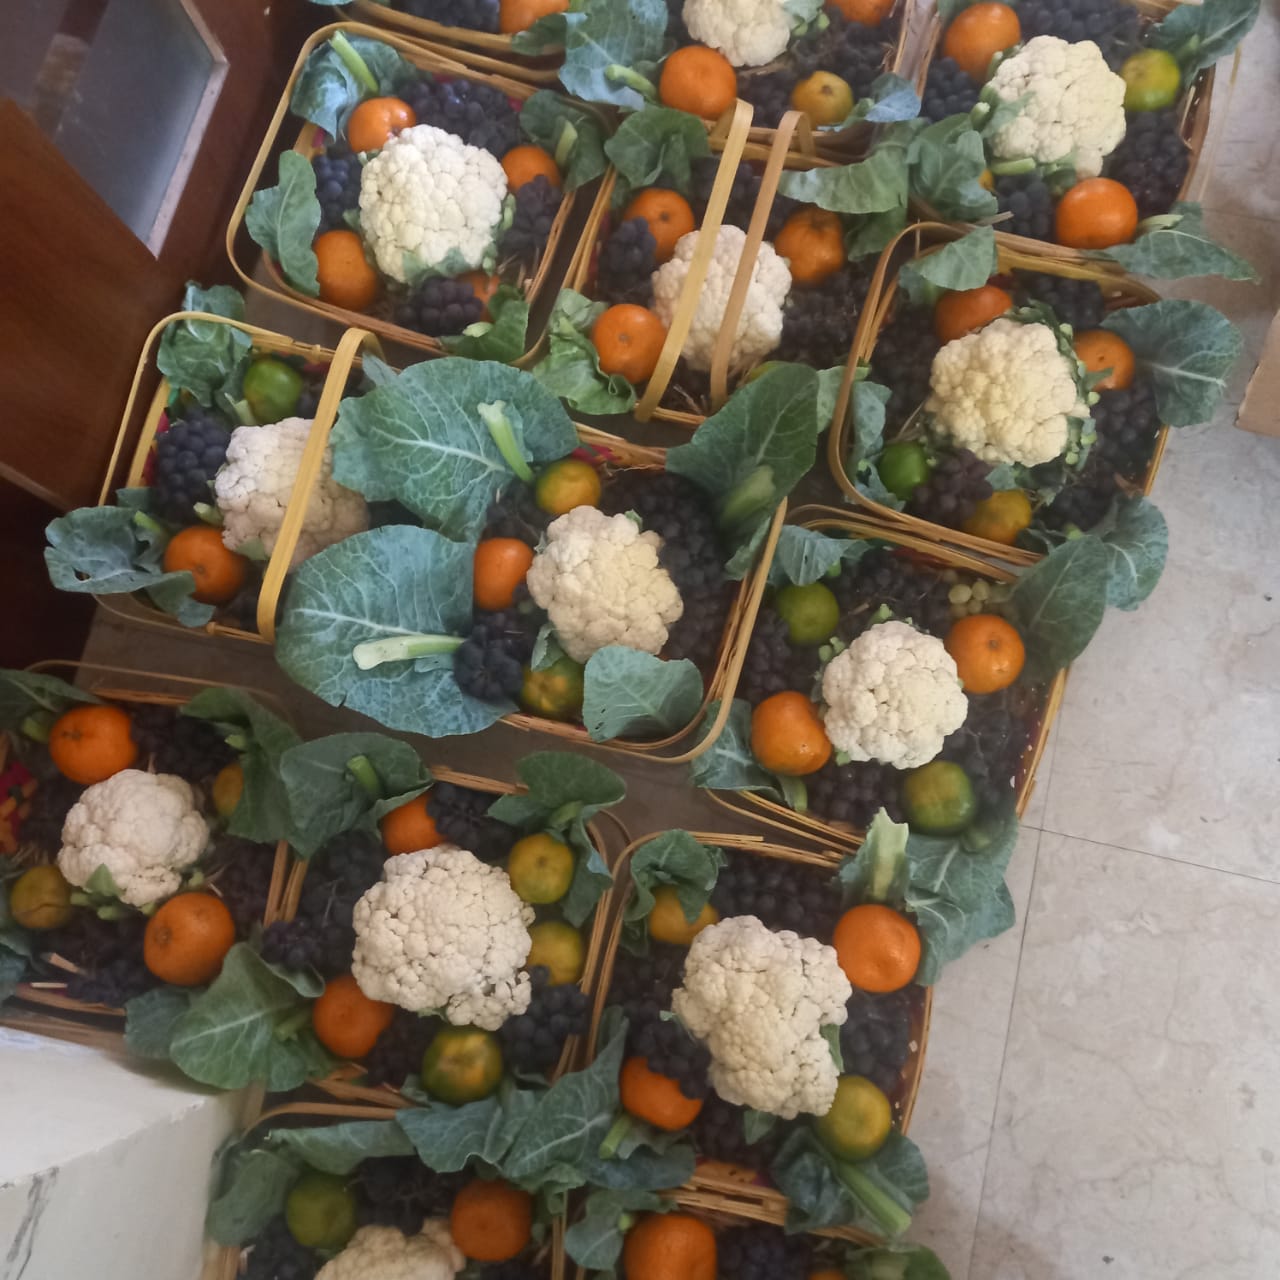 Green Gifting: Fruits & Veggies Gift Basket